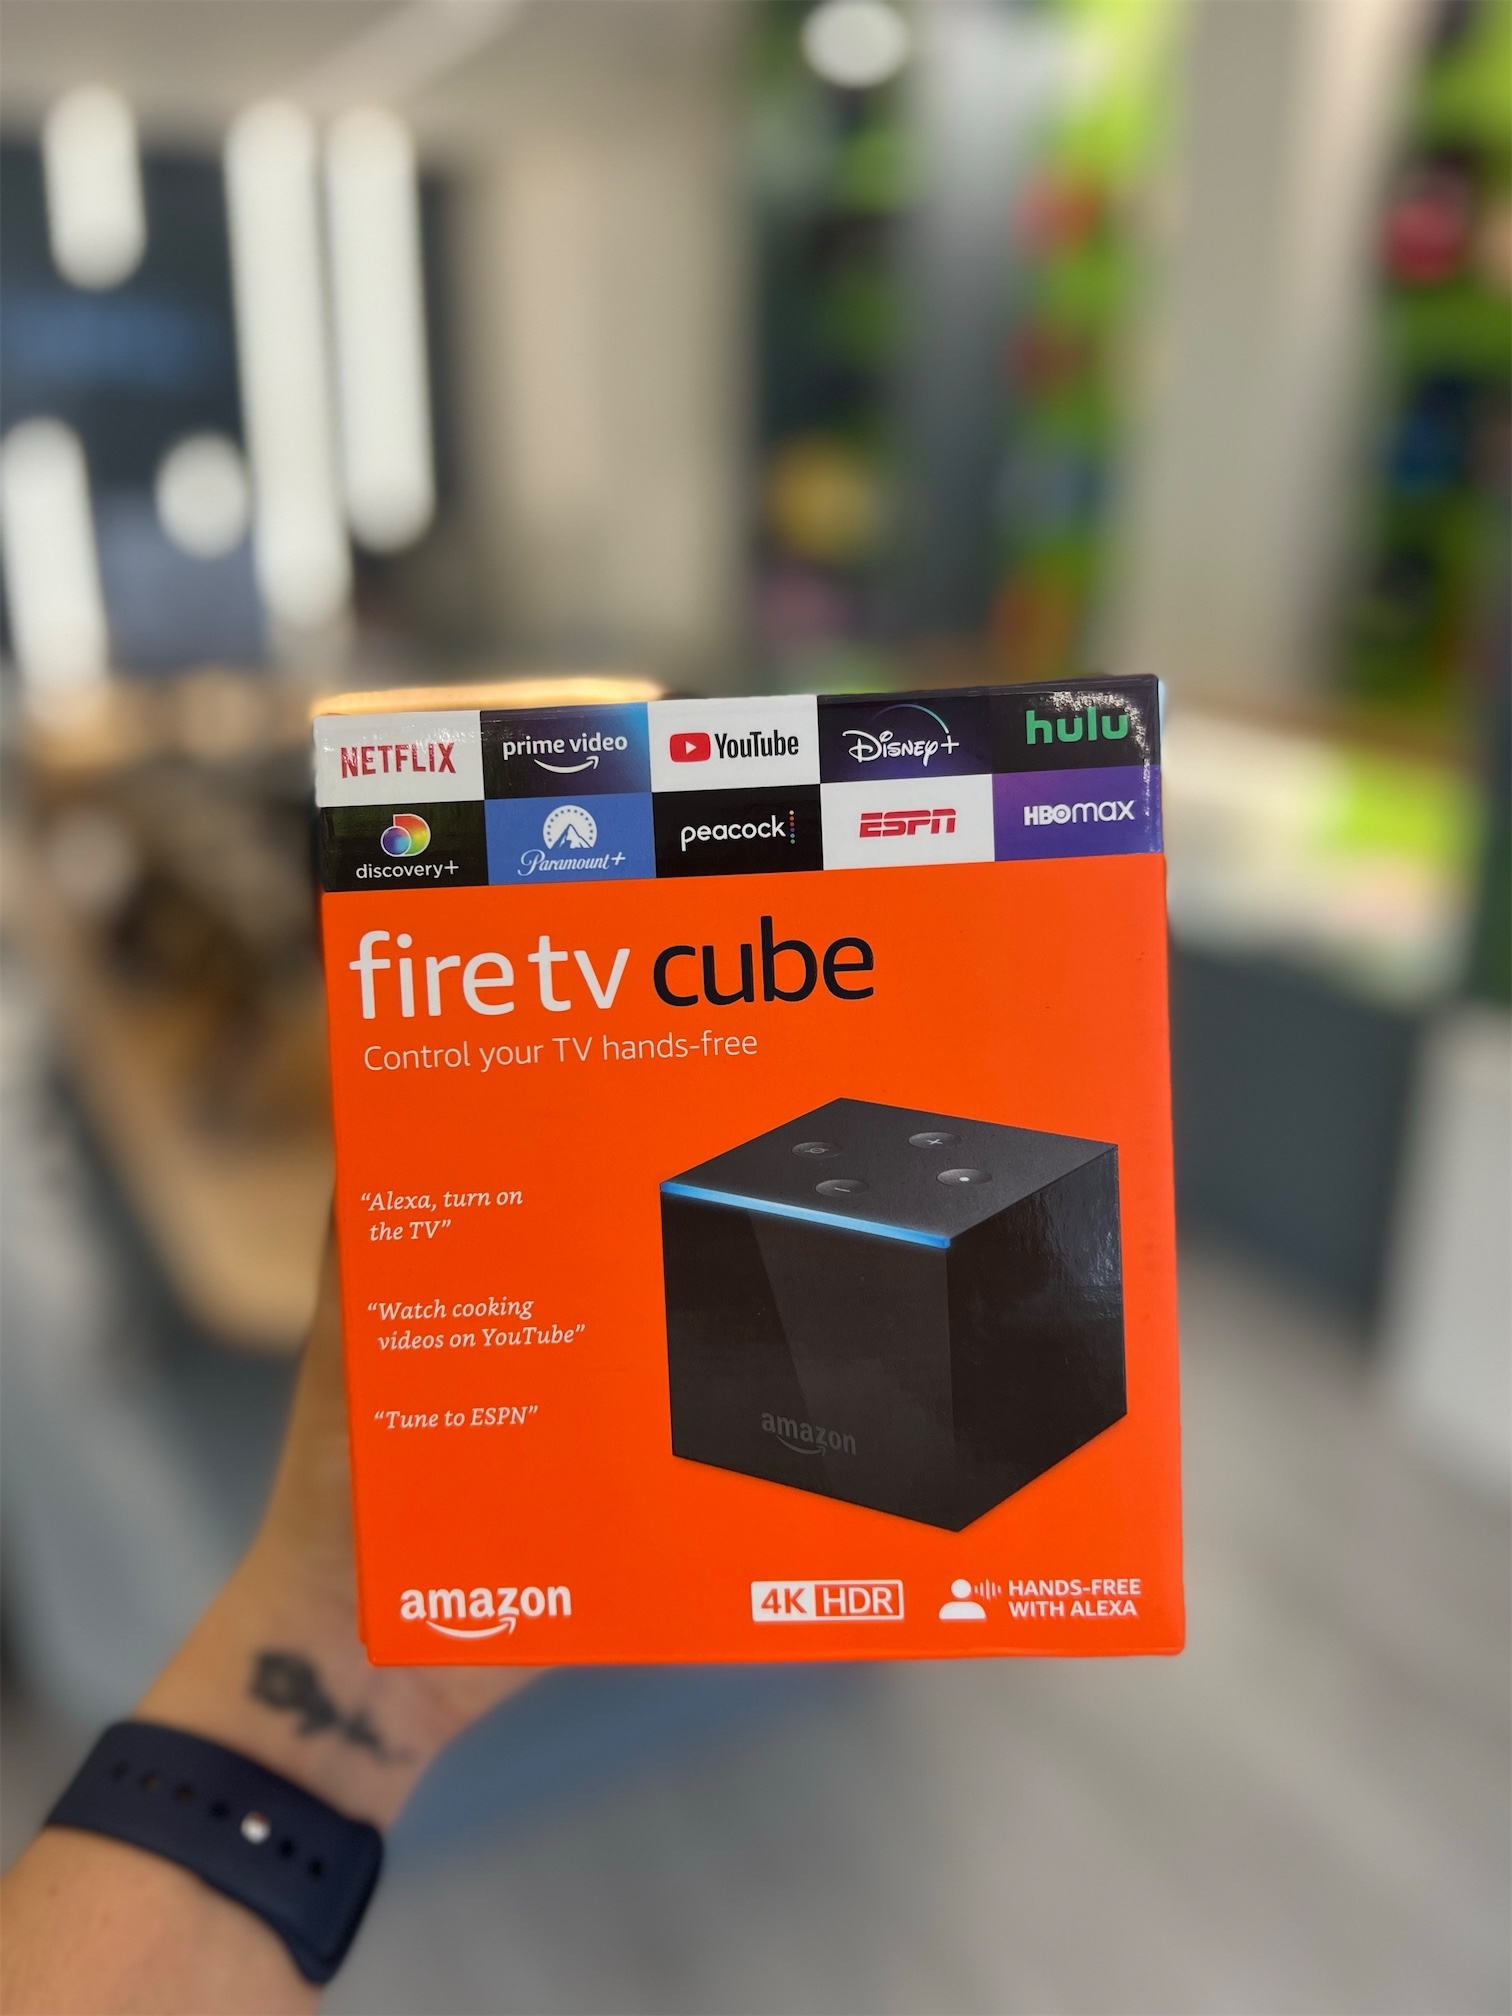 celulares y tabletas - Amazon fire tv cube